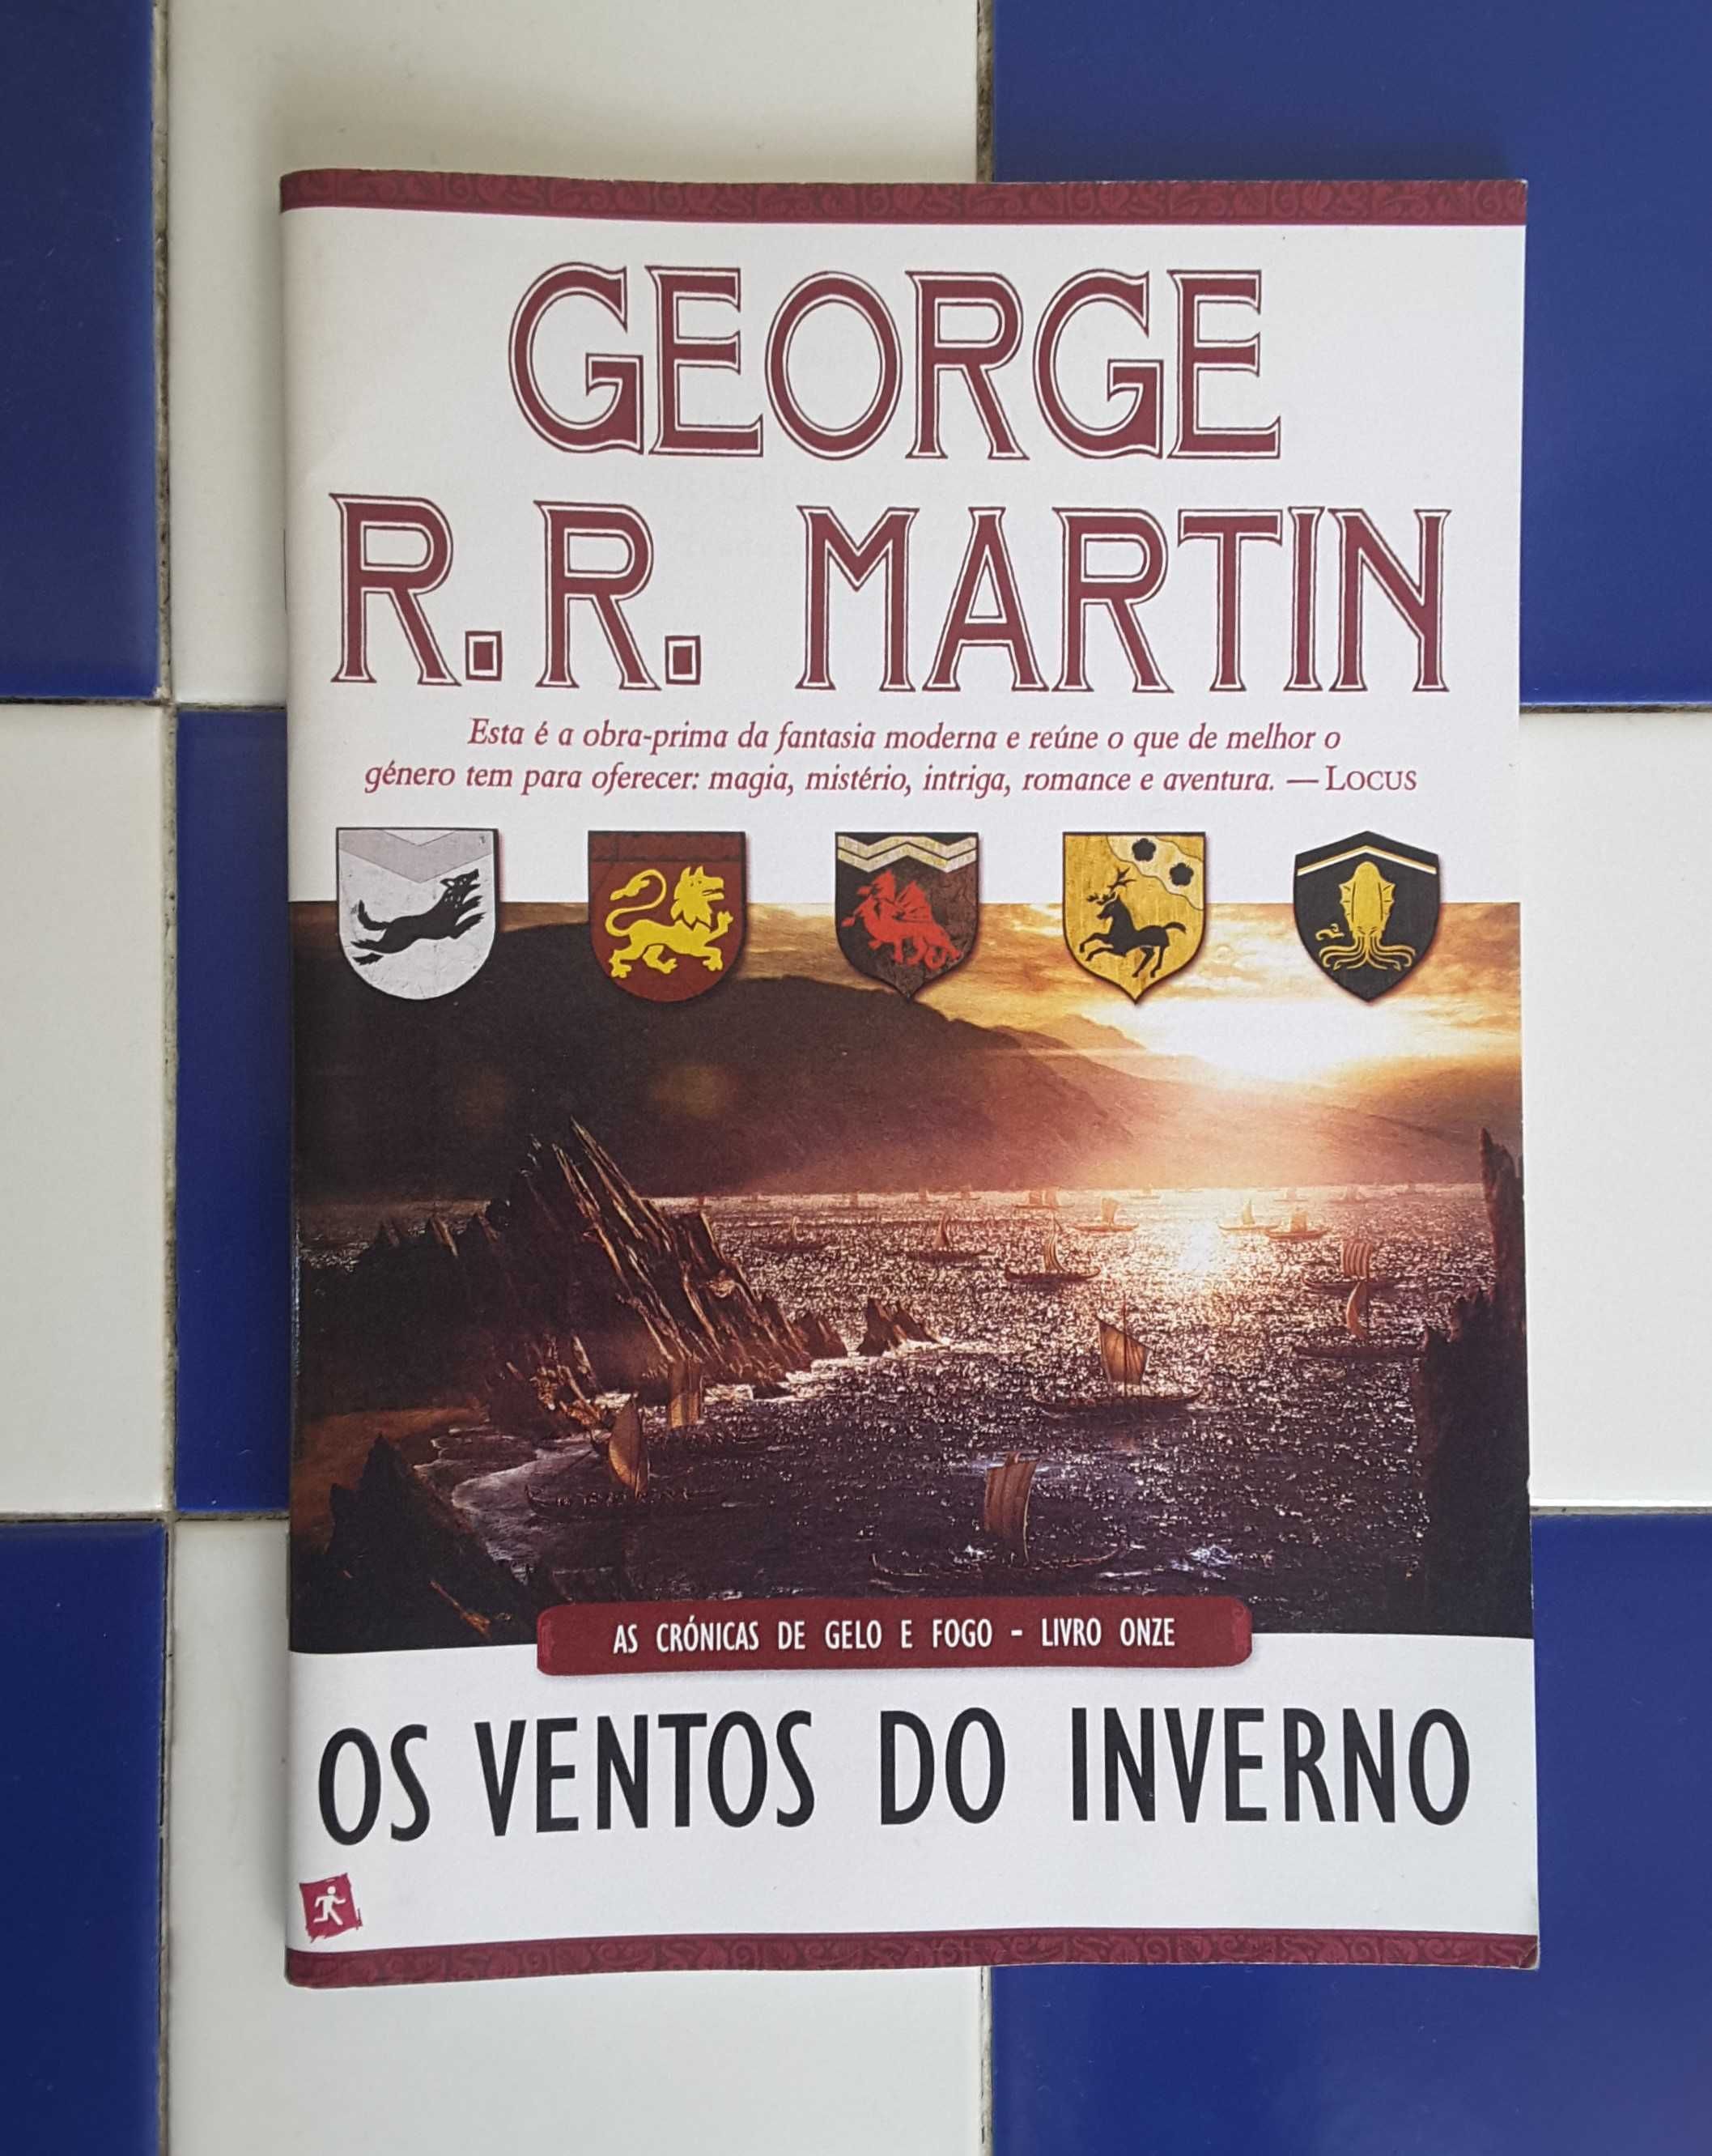 Preview/Antevisão "Os Ventos do Inverno" (Vol 11), George R.R. Martin